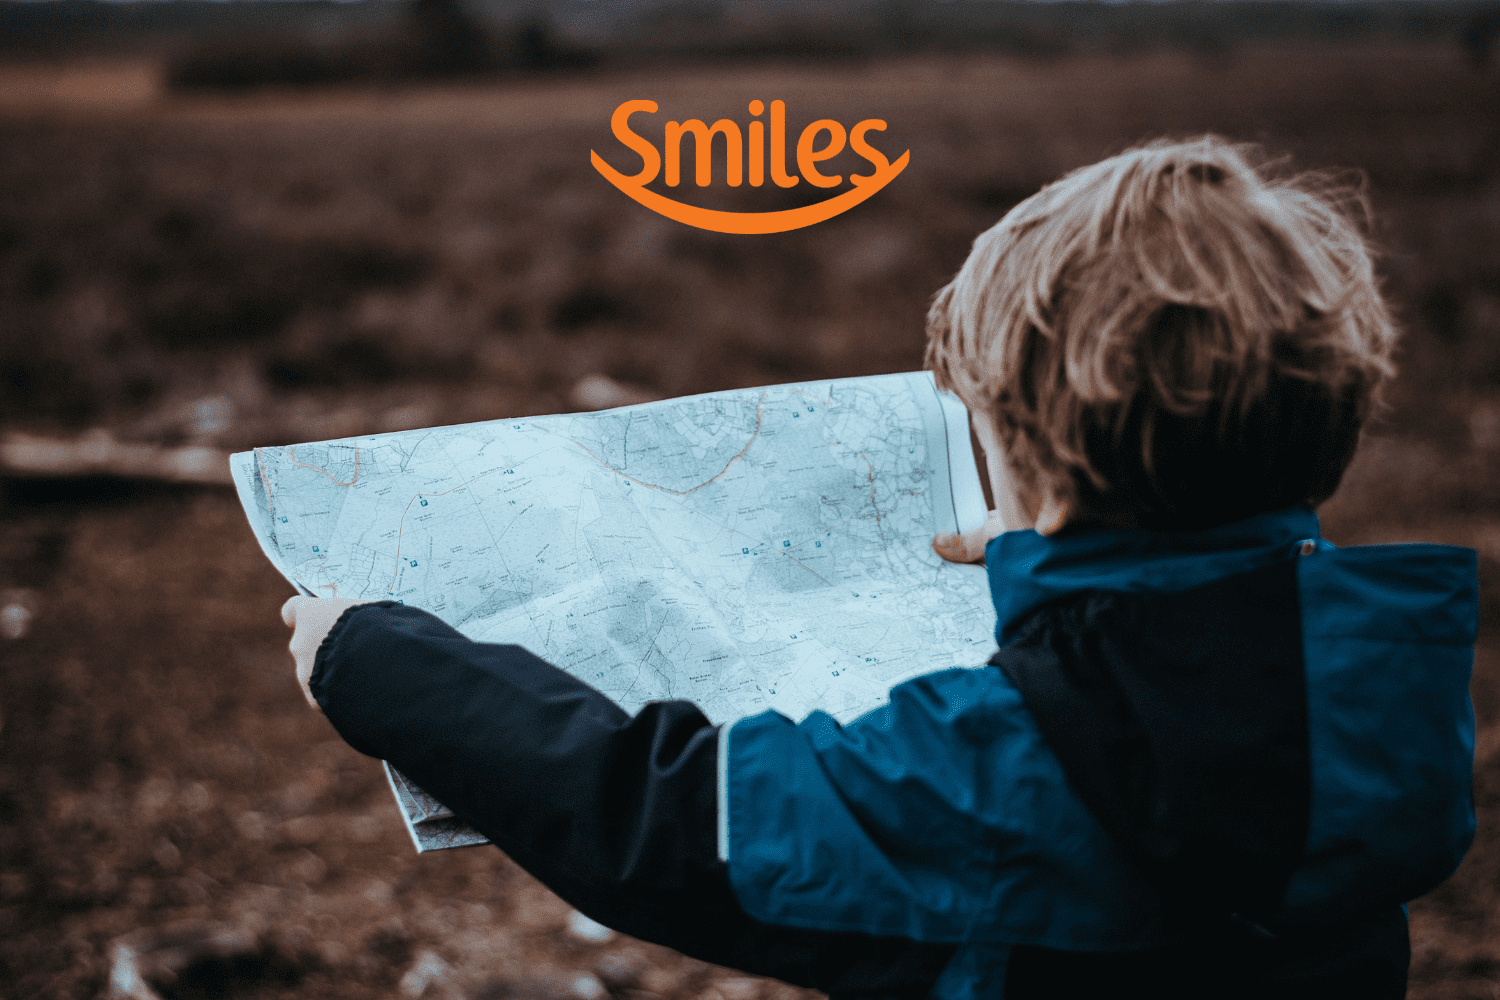 criança olhando um mapa com logo Smiles Clube Smiles